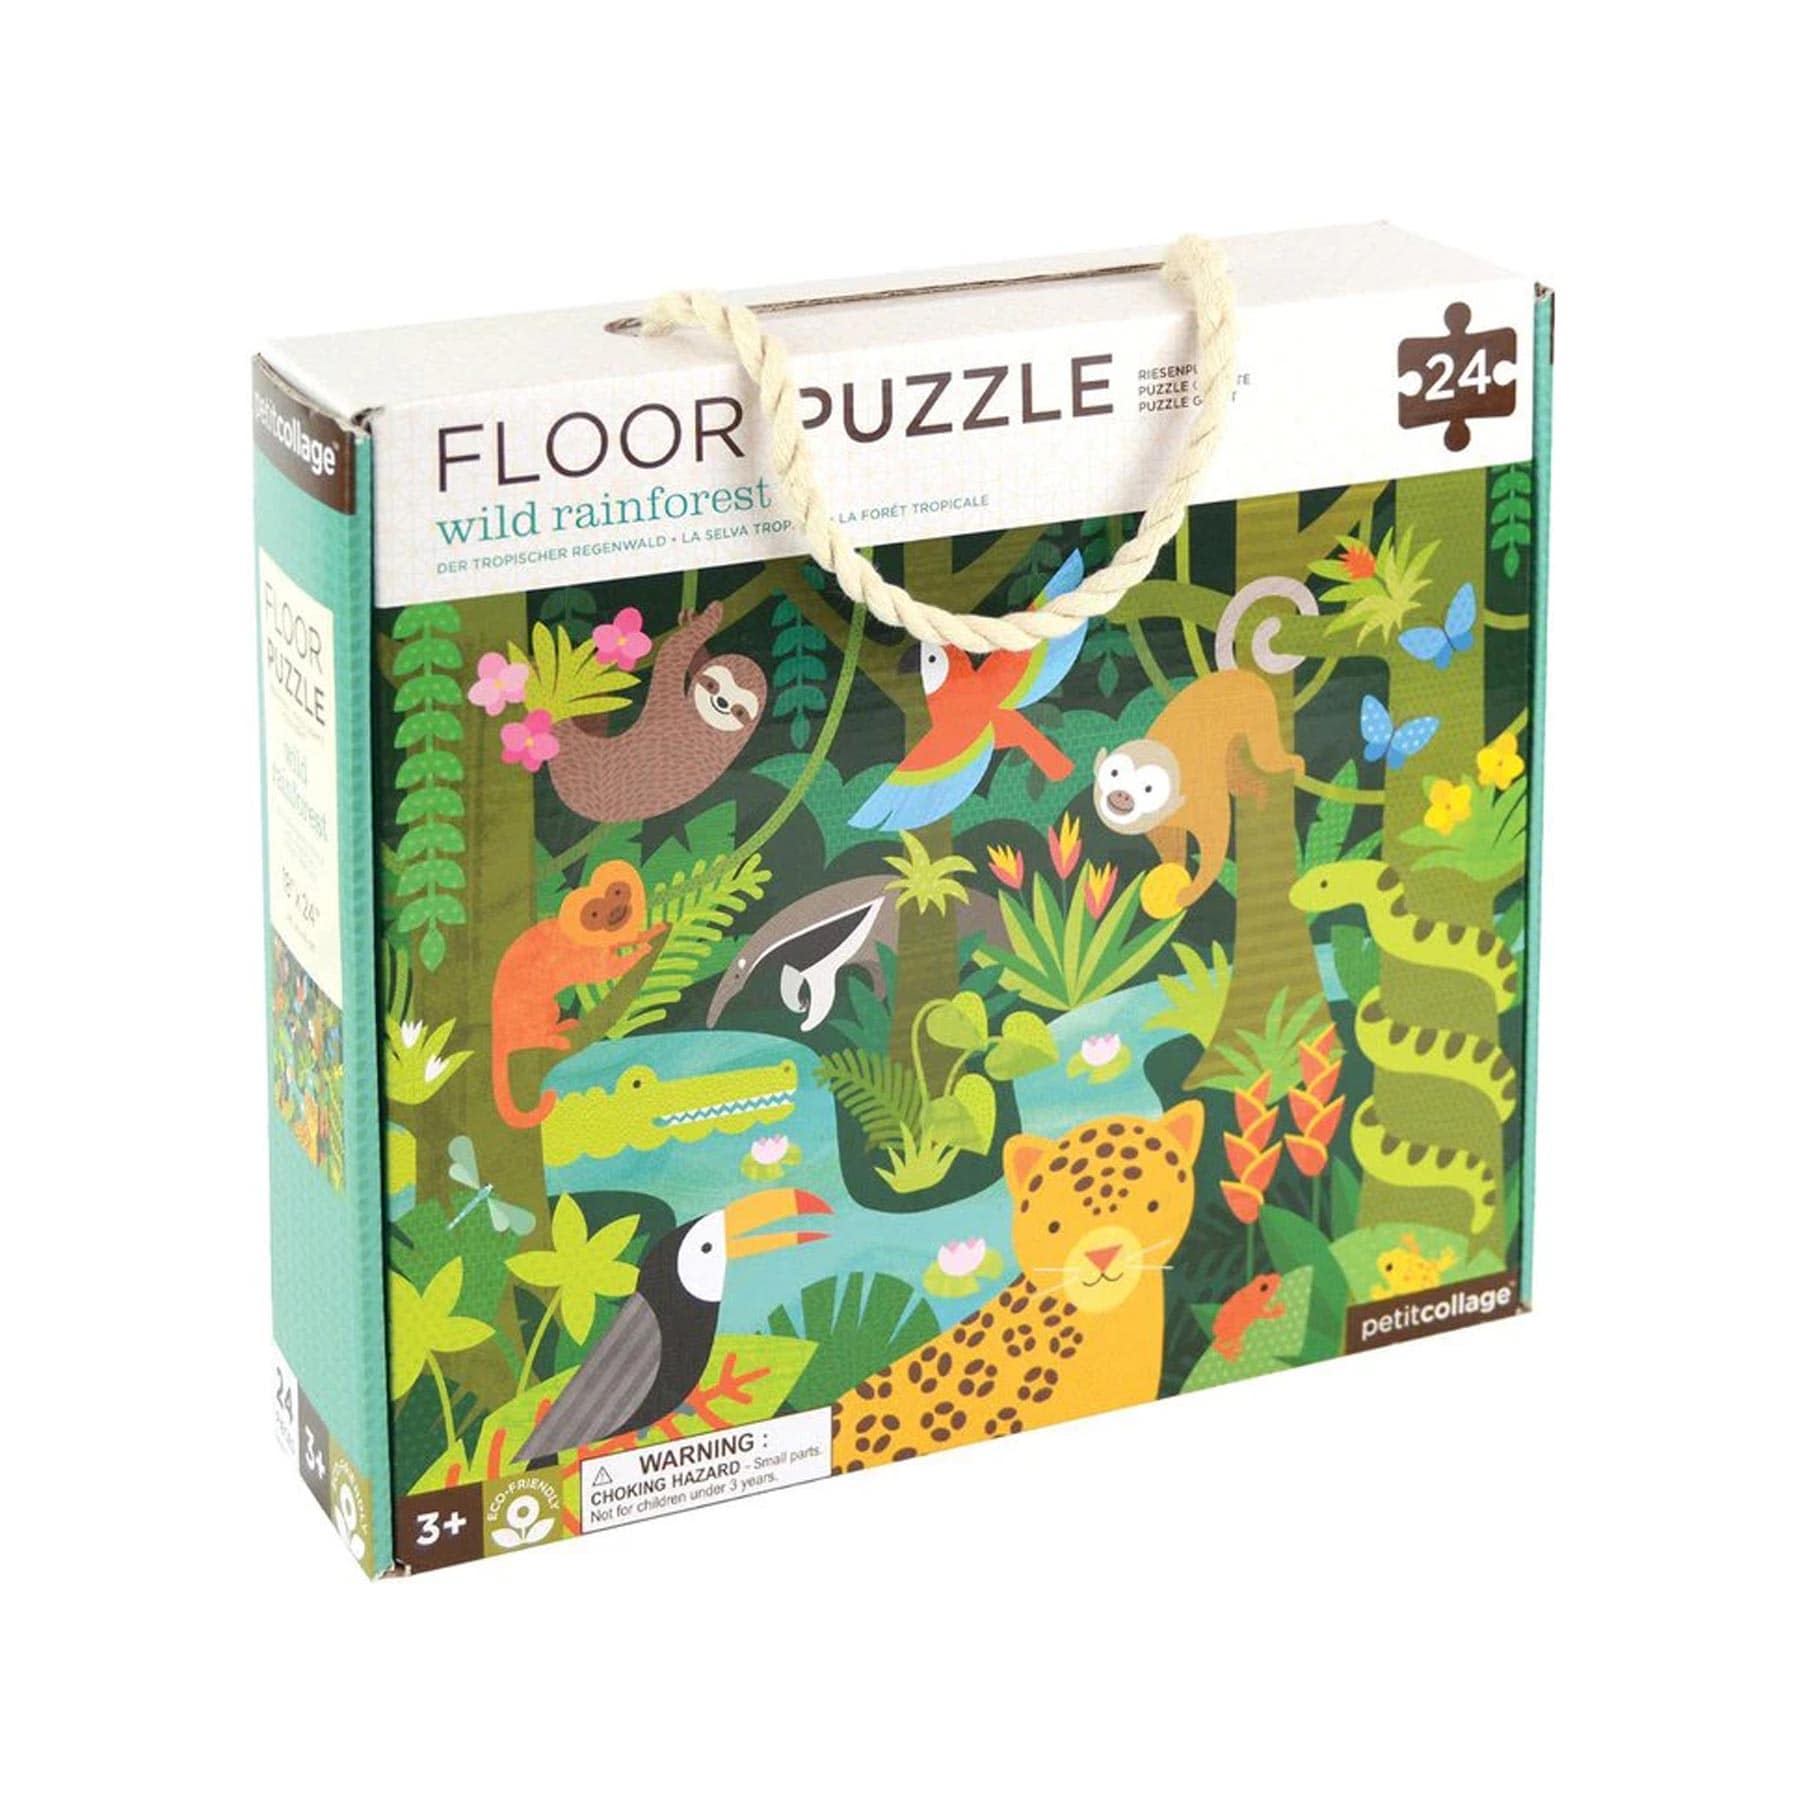 Wild rainforest 24-piece floor puzzle